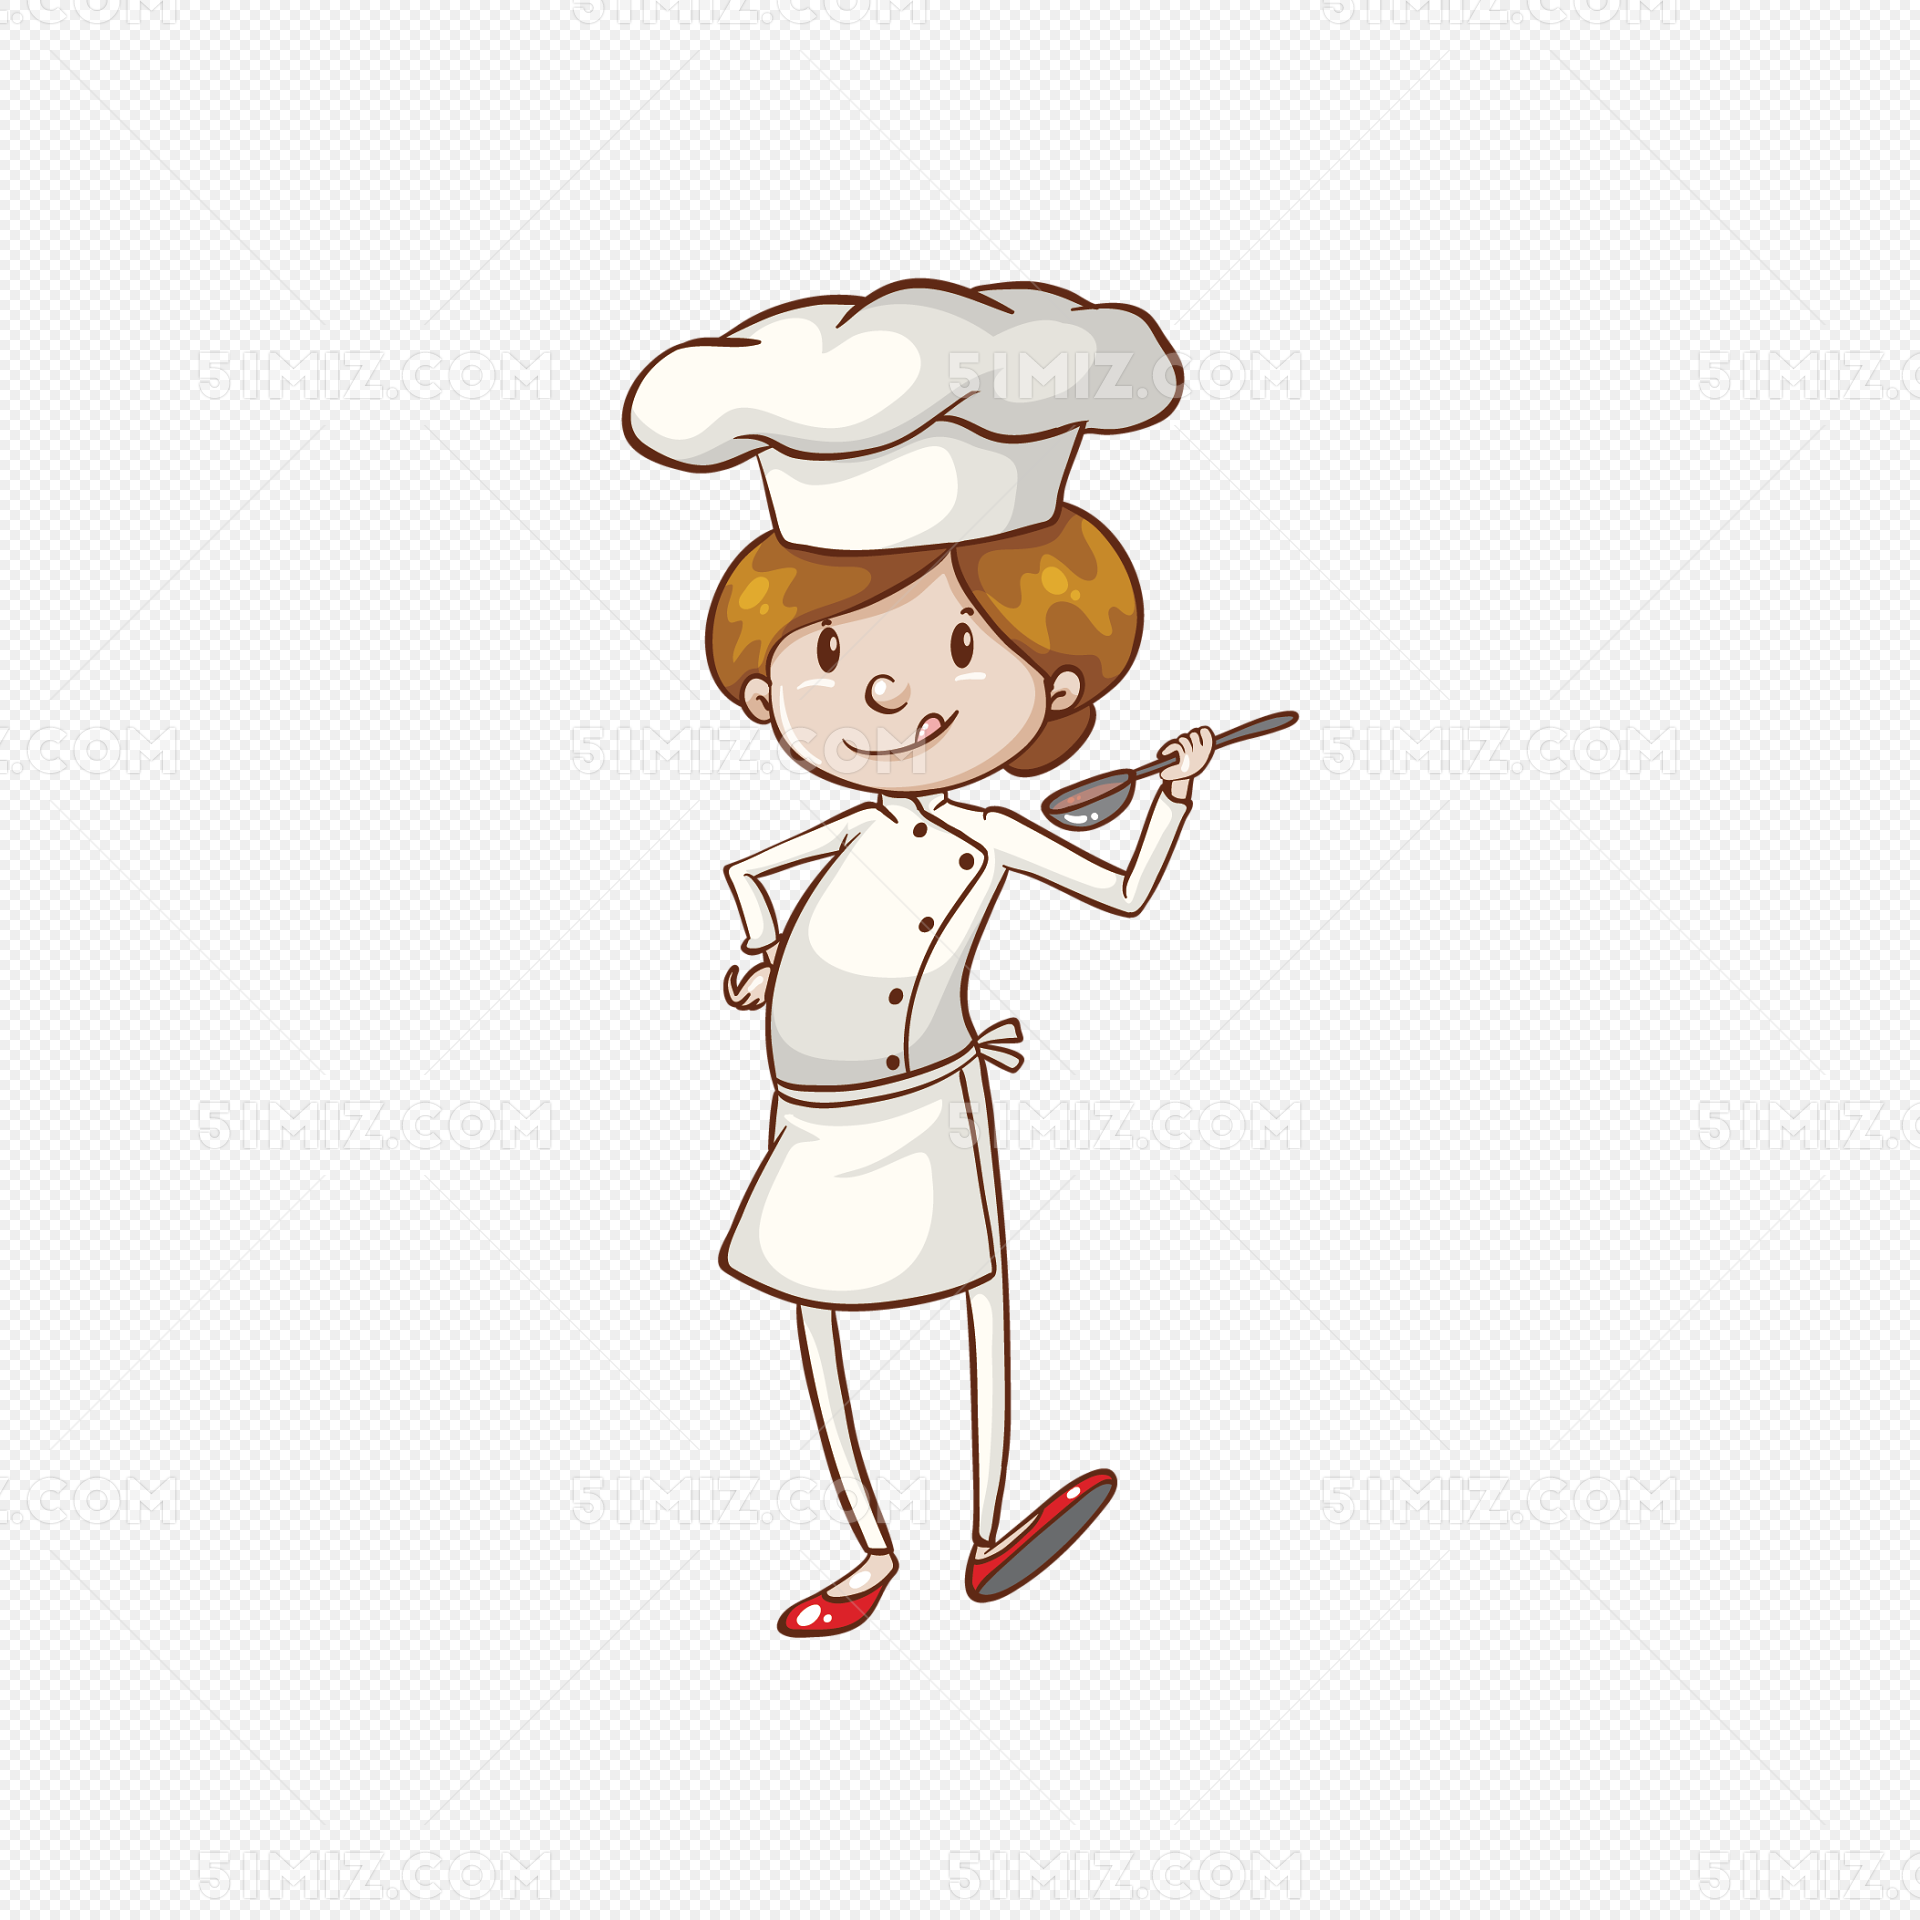 卡通小厨师图片素材免费下载 - 觅知网